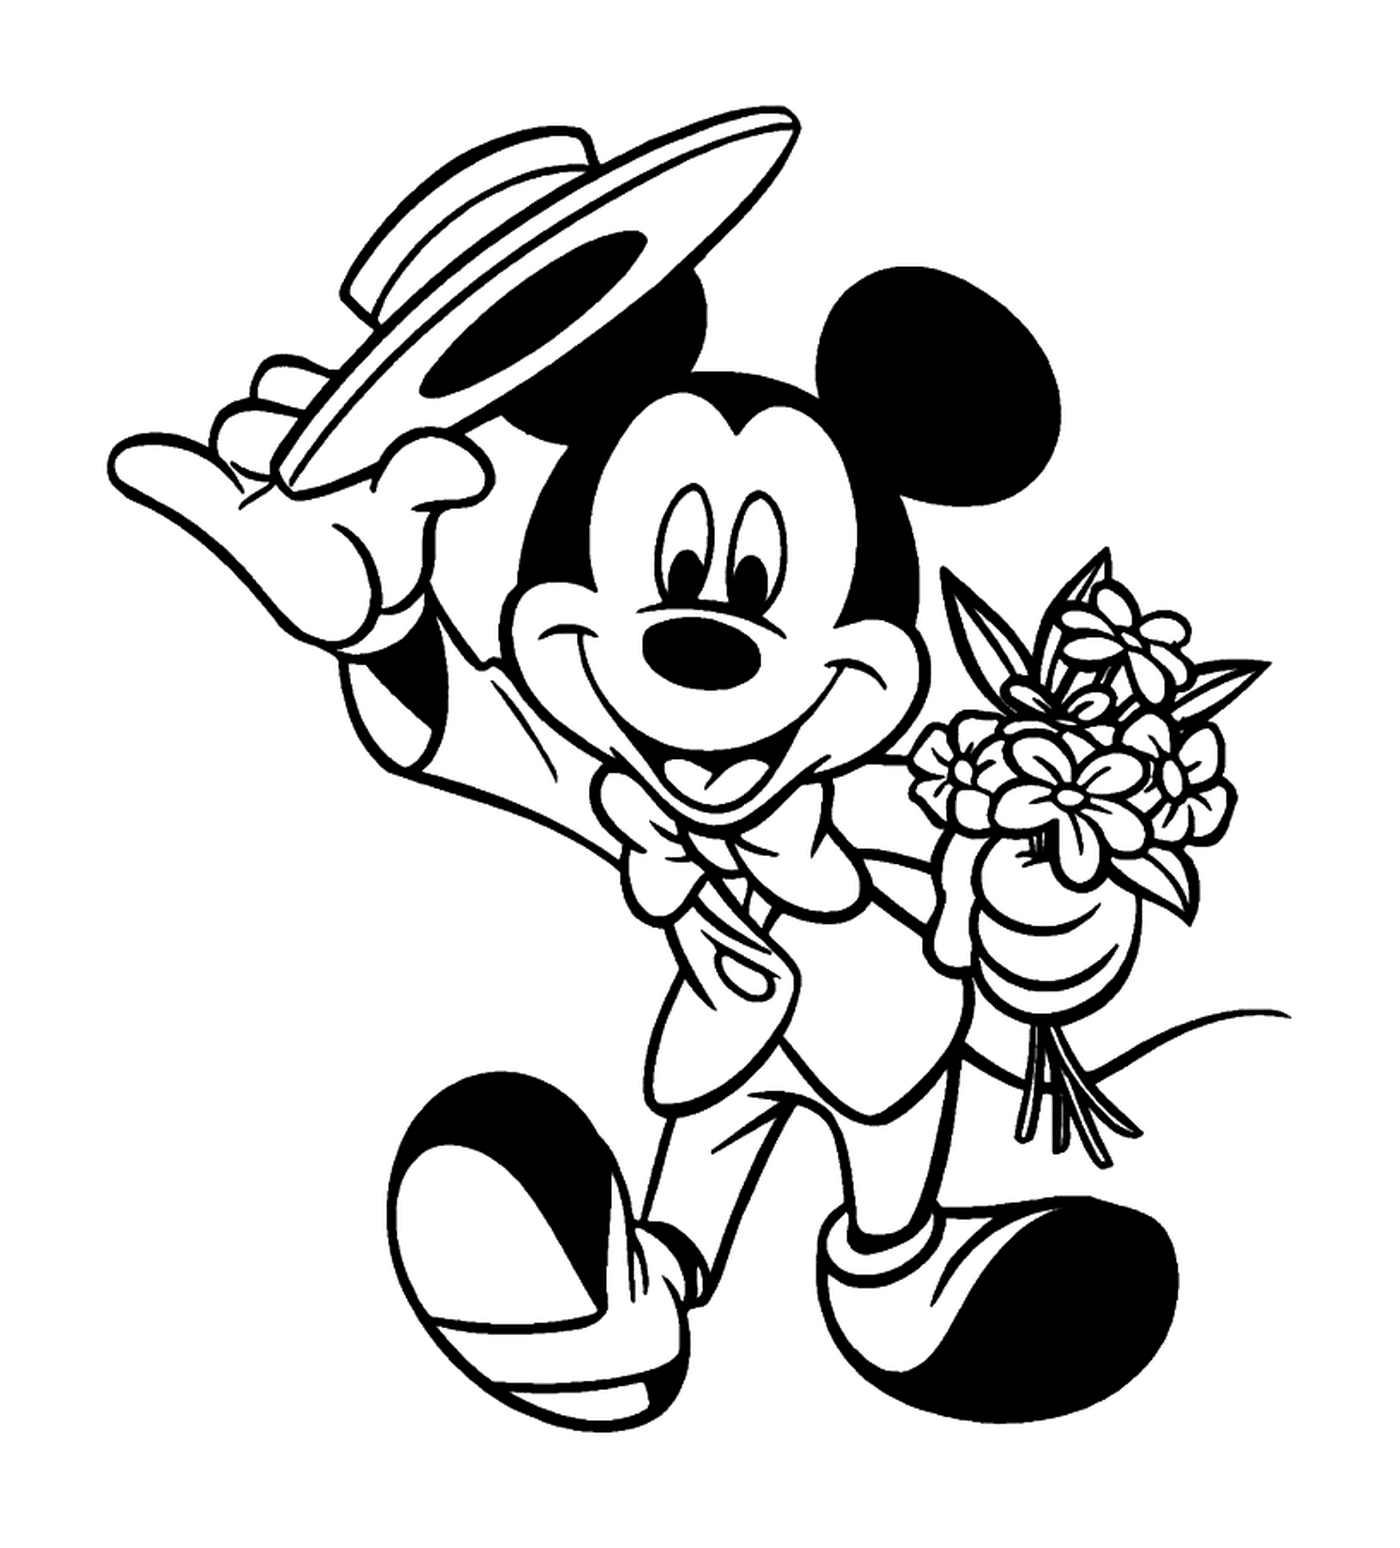  Mickey va a una cita galante: la celebración de un ramo 